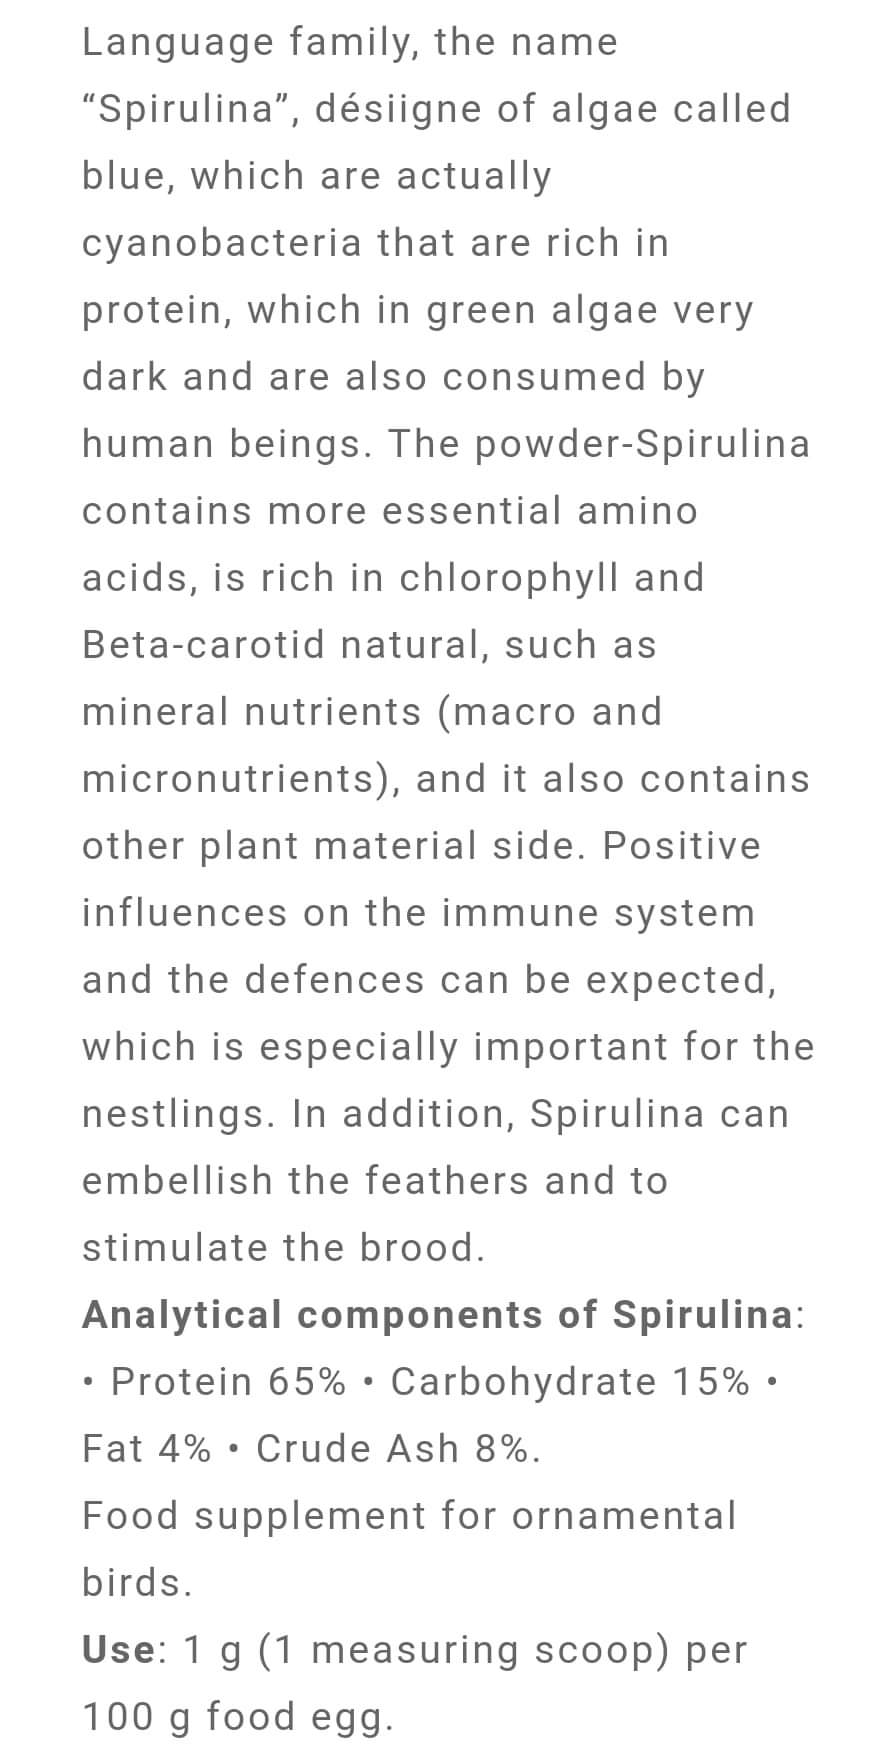 Spirulina ( Verbeterd het immuunsysteem ) Easseym